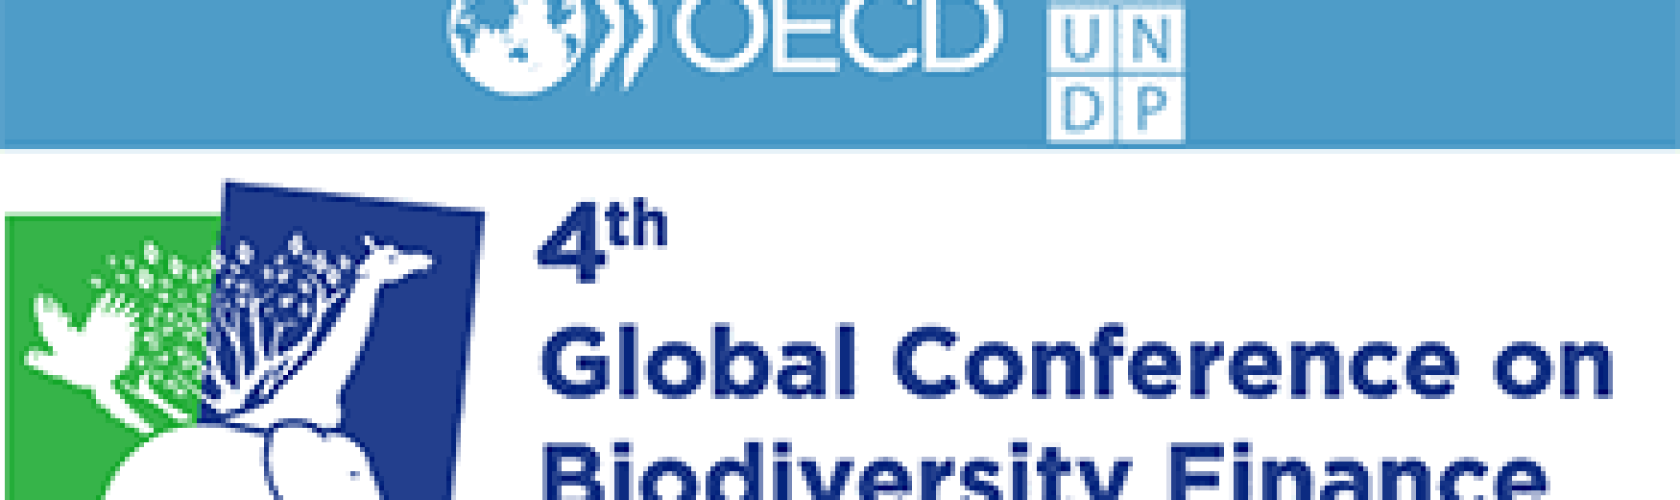 OECD-UNDP-conference-on-biodiversity-finance-350-w-vs